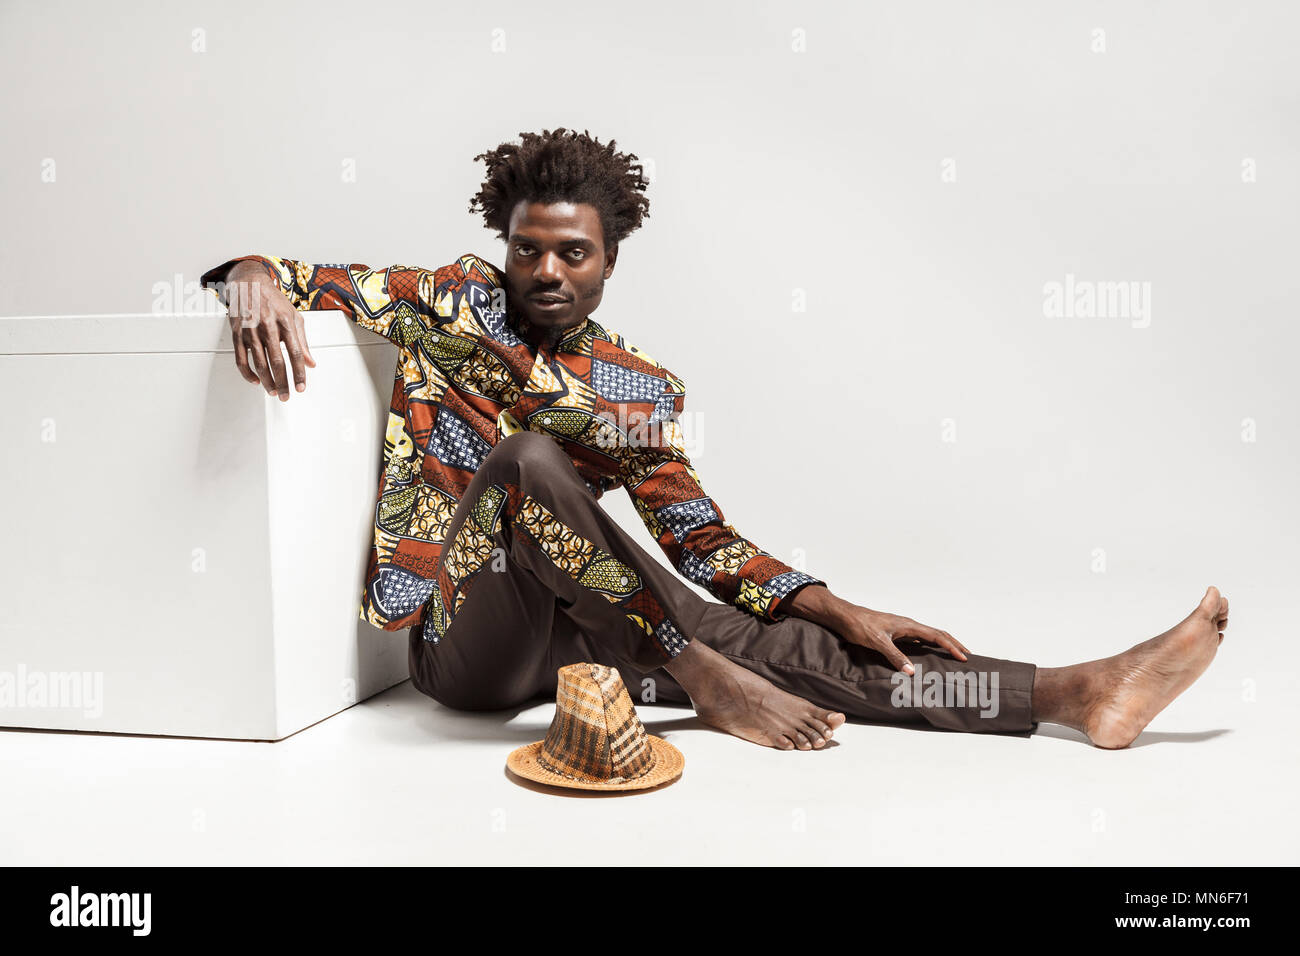 Jeune adulte homme africain, assis sur le plancher près de coub. Piscine, isolé sur fond gris Banque D'Images